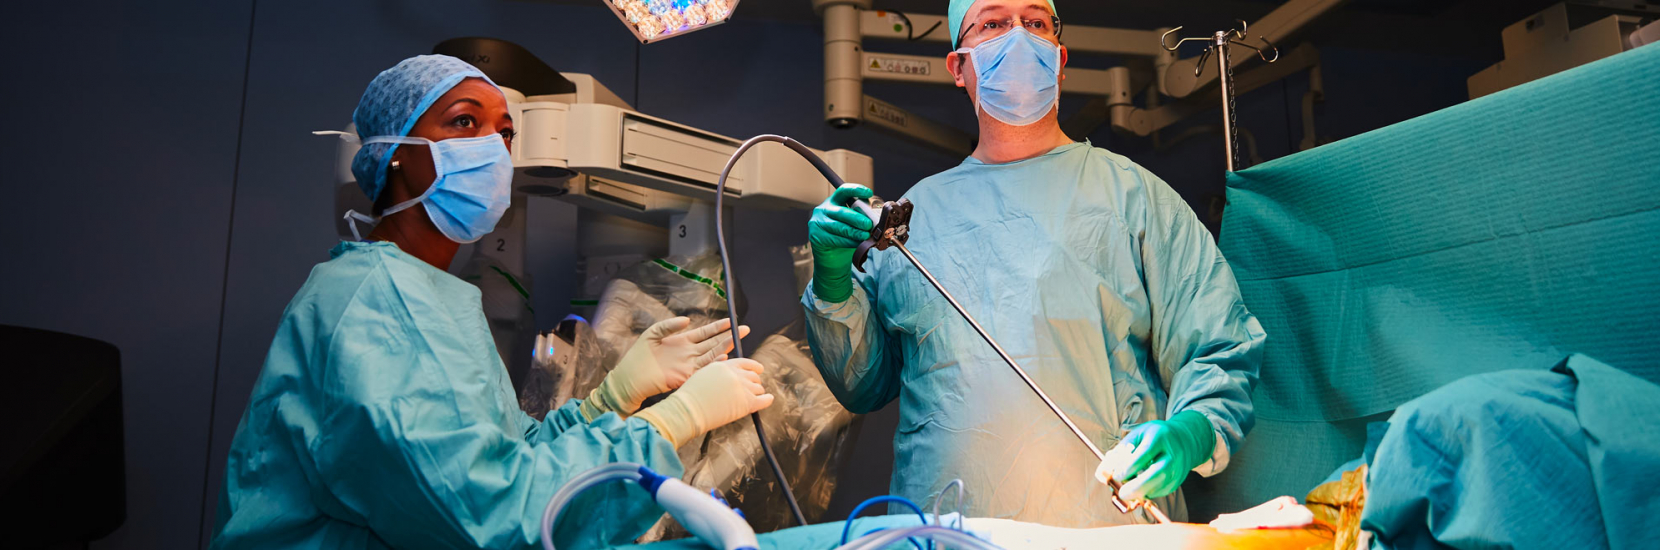 La chirurgie robotique au coeur du bloc opératoire du CHL : un retour sur 18 mois d'expérience